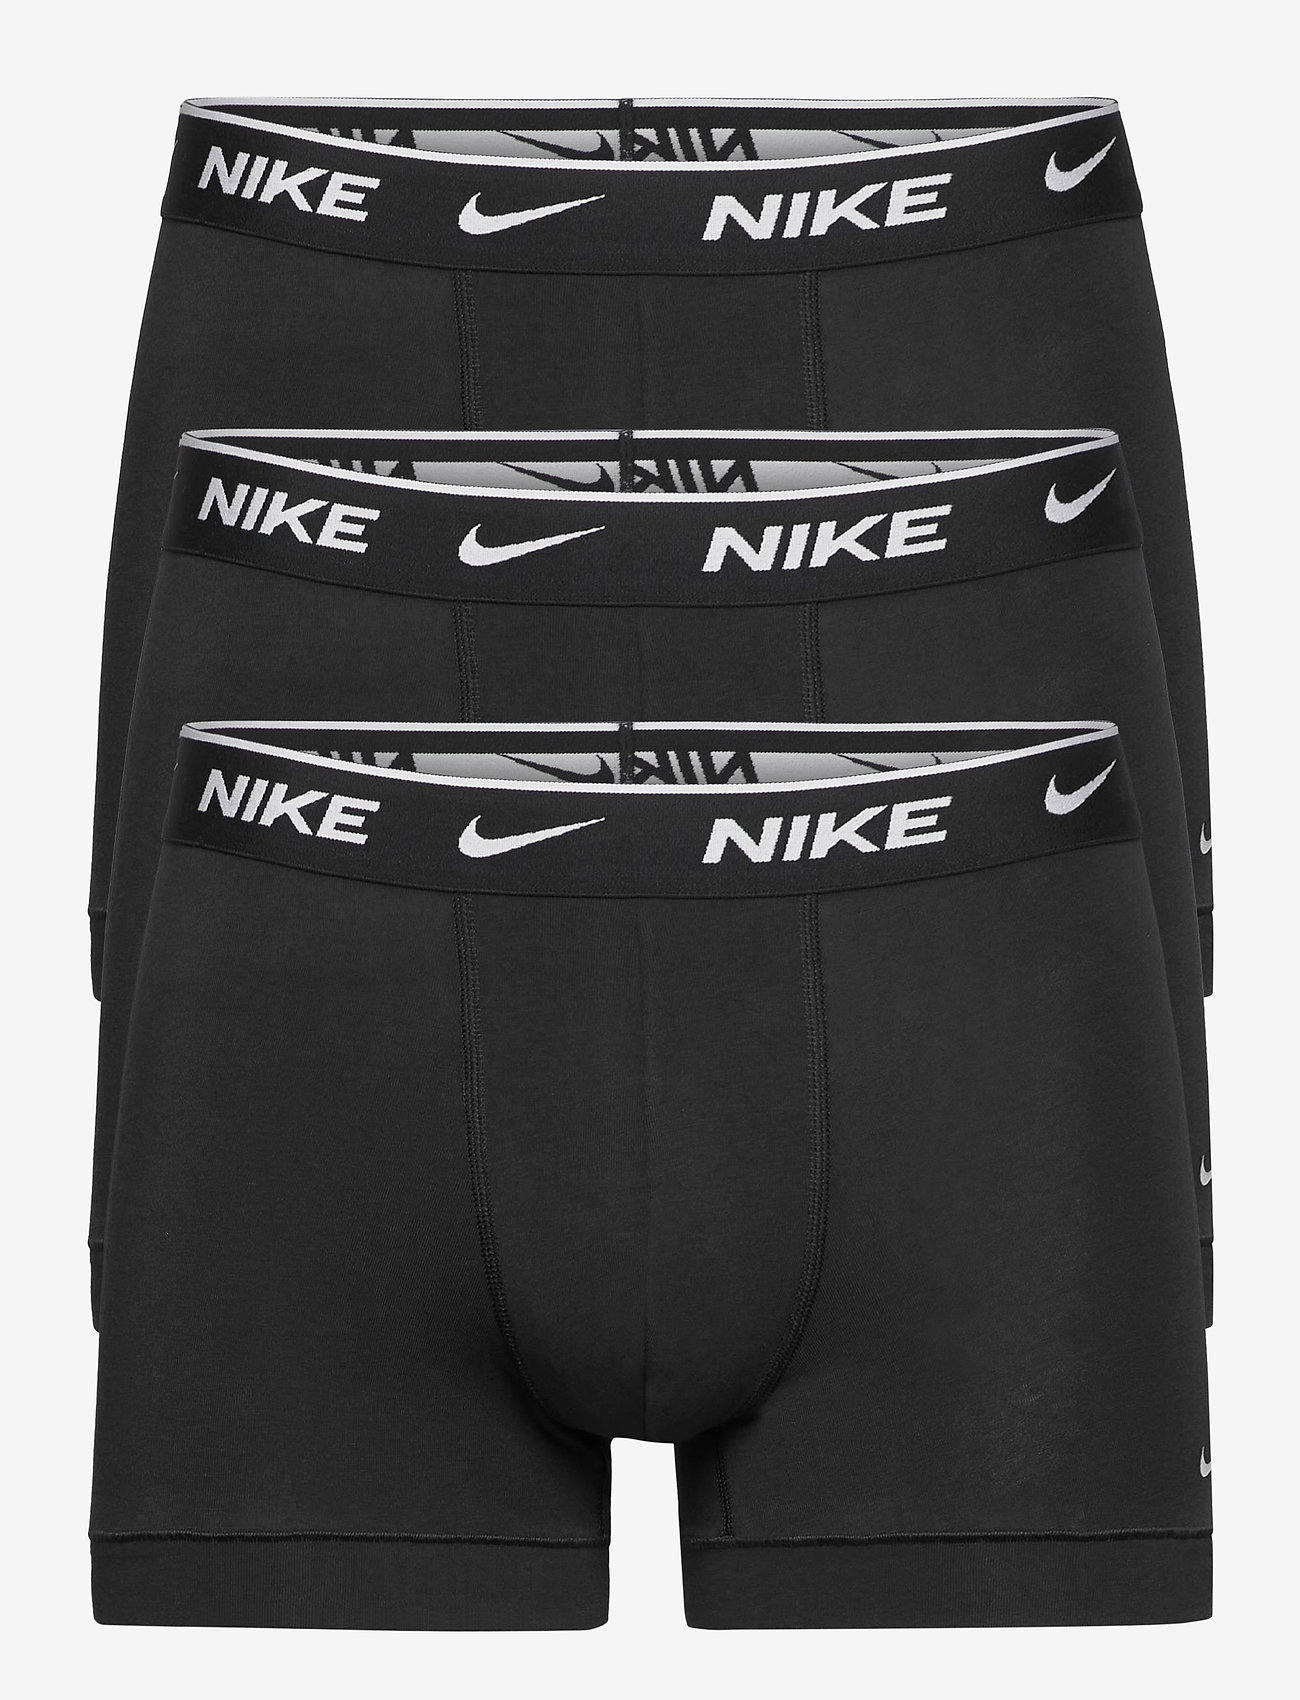 NIKE Underwear - TRUNK 3PK - multipack underpants - black/black/black - 0